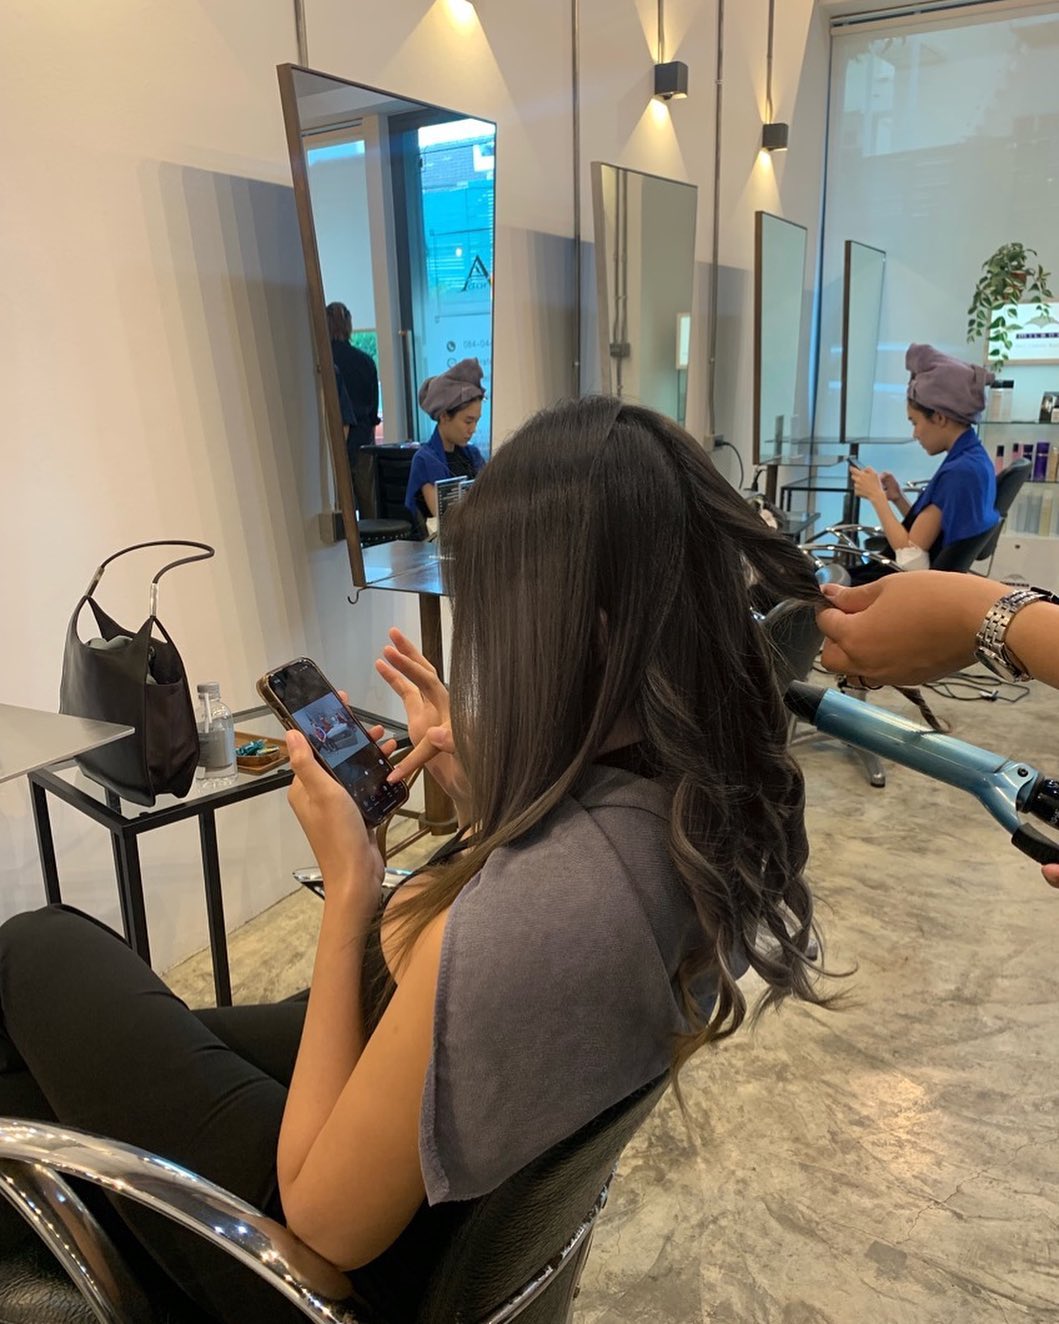 #hairatelierador
#バンコク美容室
#バンコクヘアサロン
#バンコクスクンビット
#ヘアスタイル